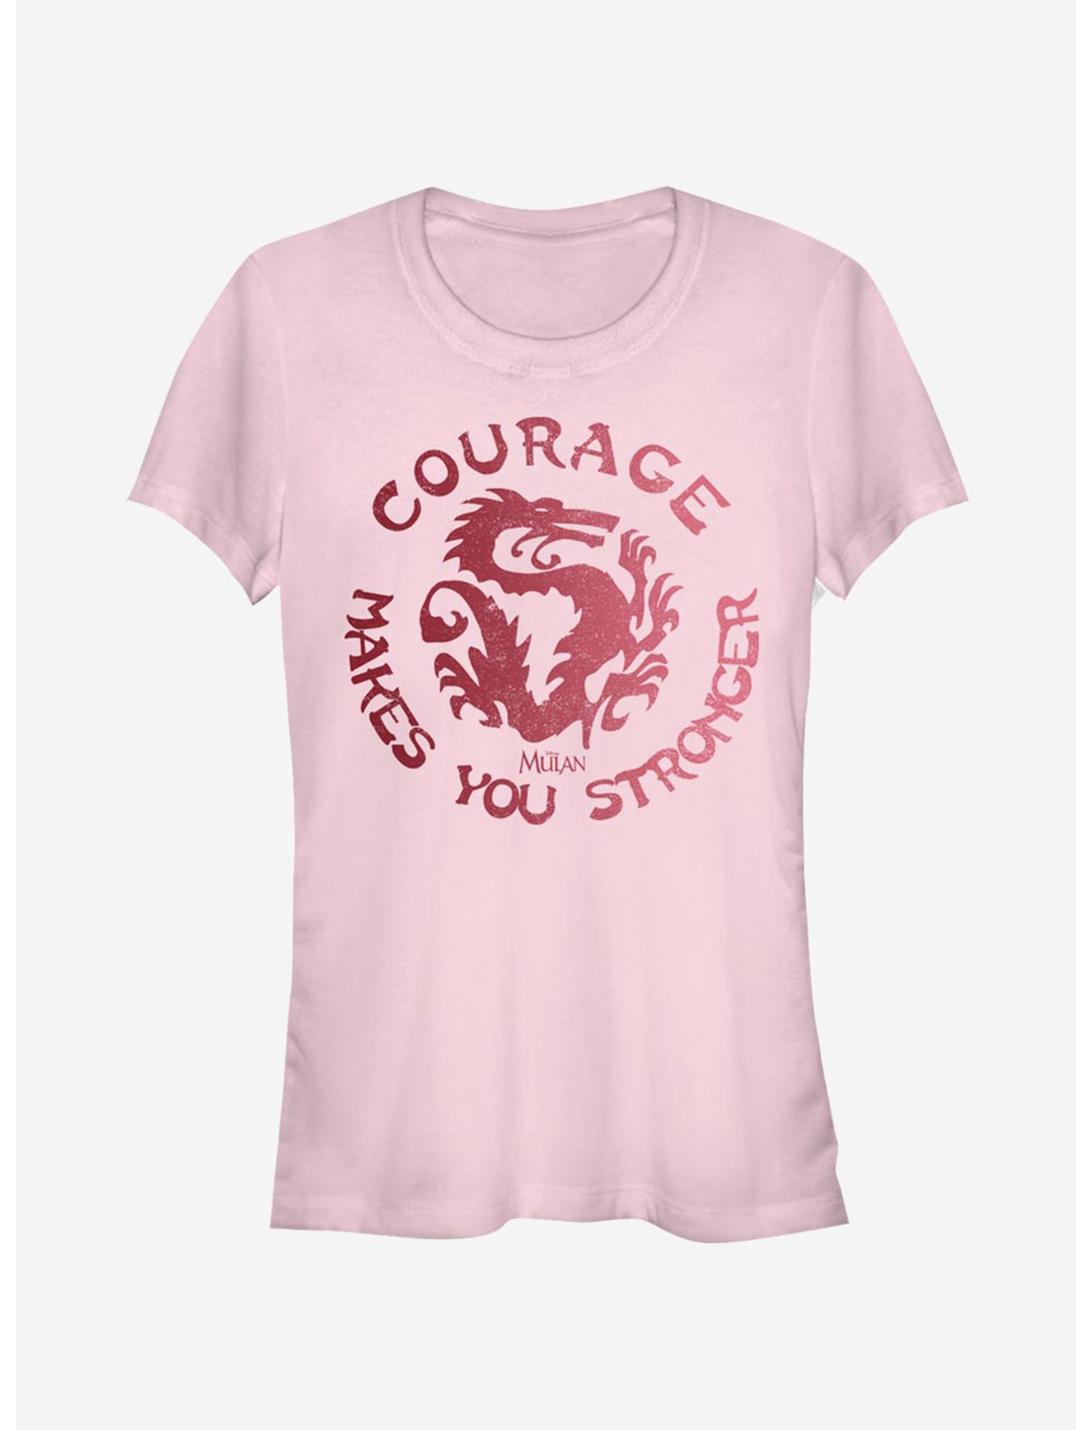 Disney Mulan Courage Girls T-Shirt, LIGHT PINK, hi-res